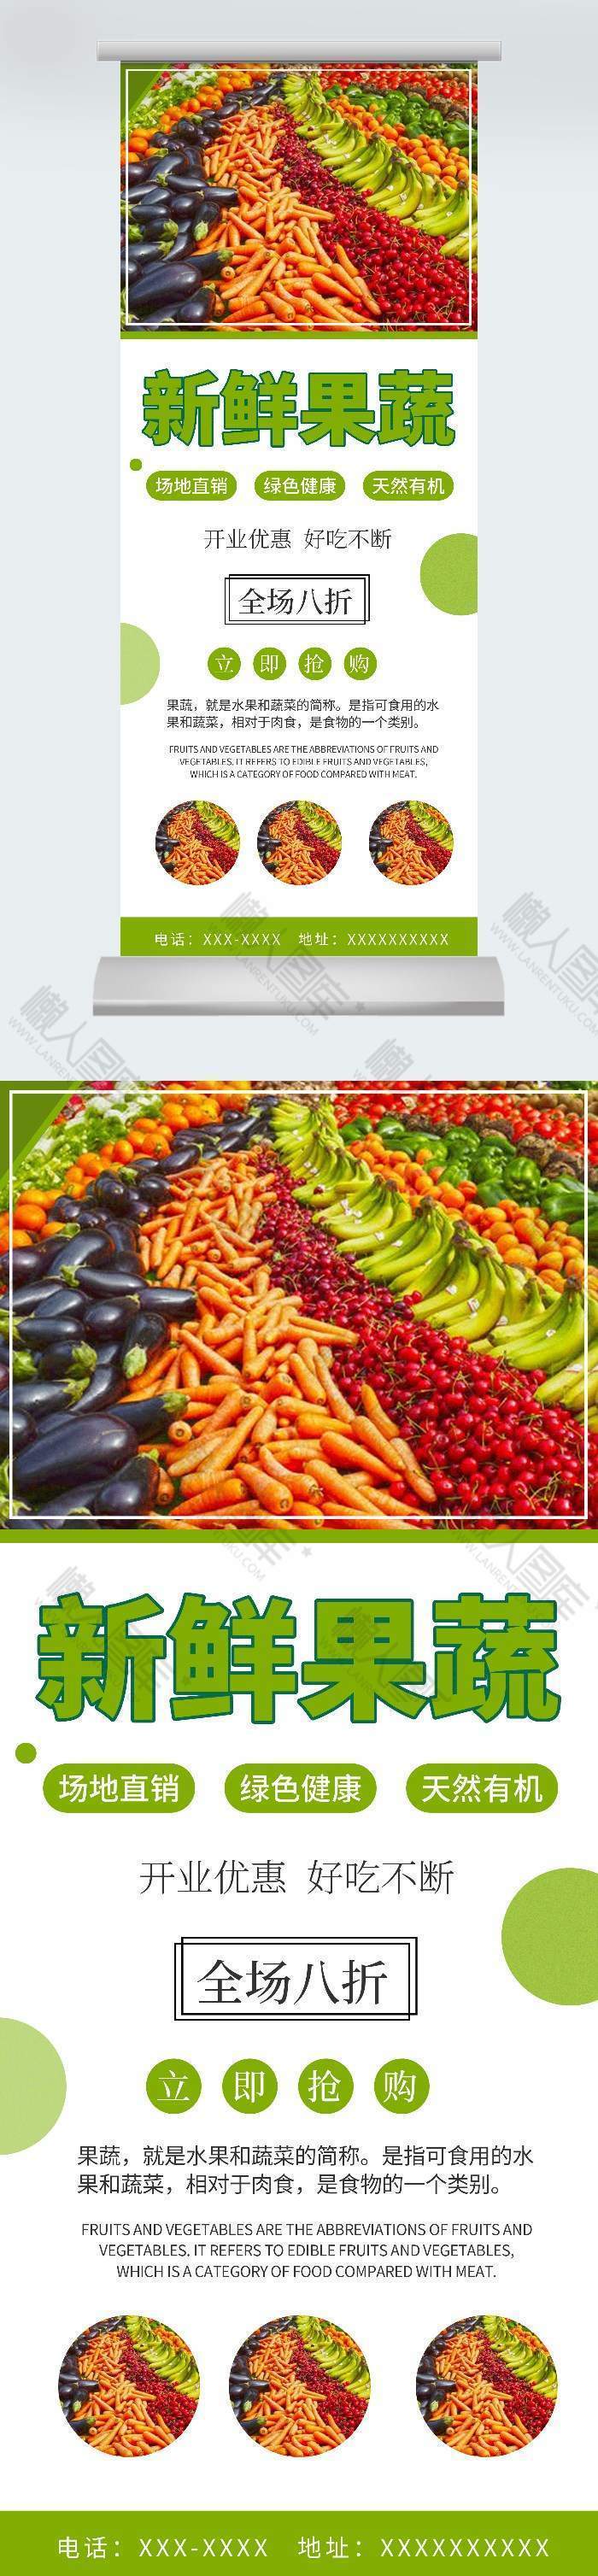 简约新鲜蔬菜超市宣传海报